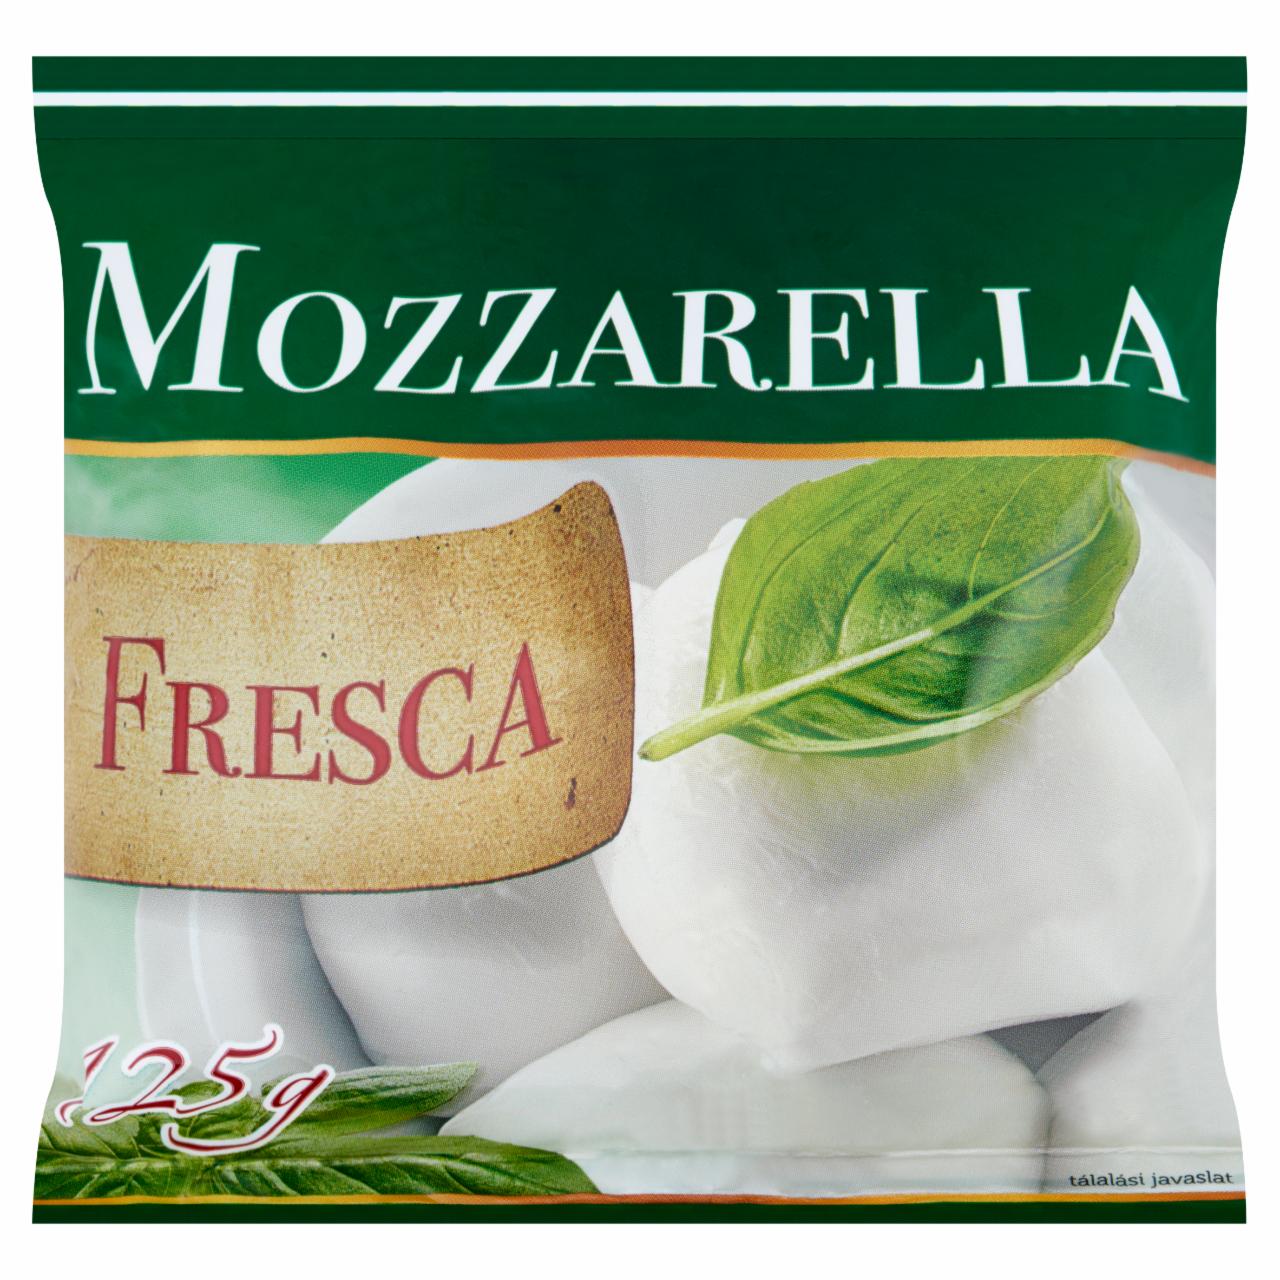 Képek - Mozzarella Fresca zsíros lágy sajt 225 g